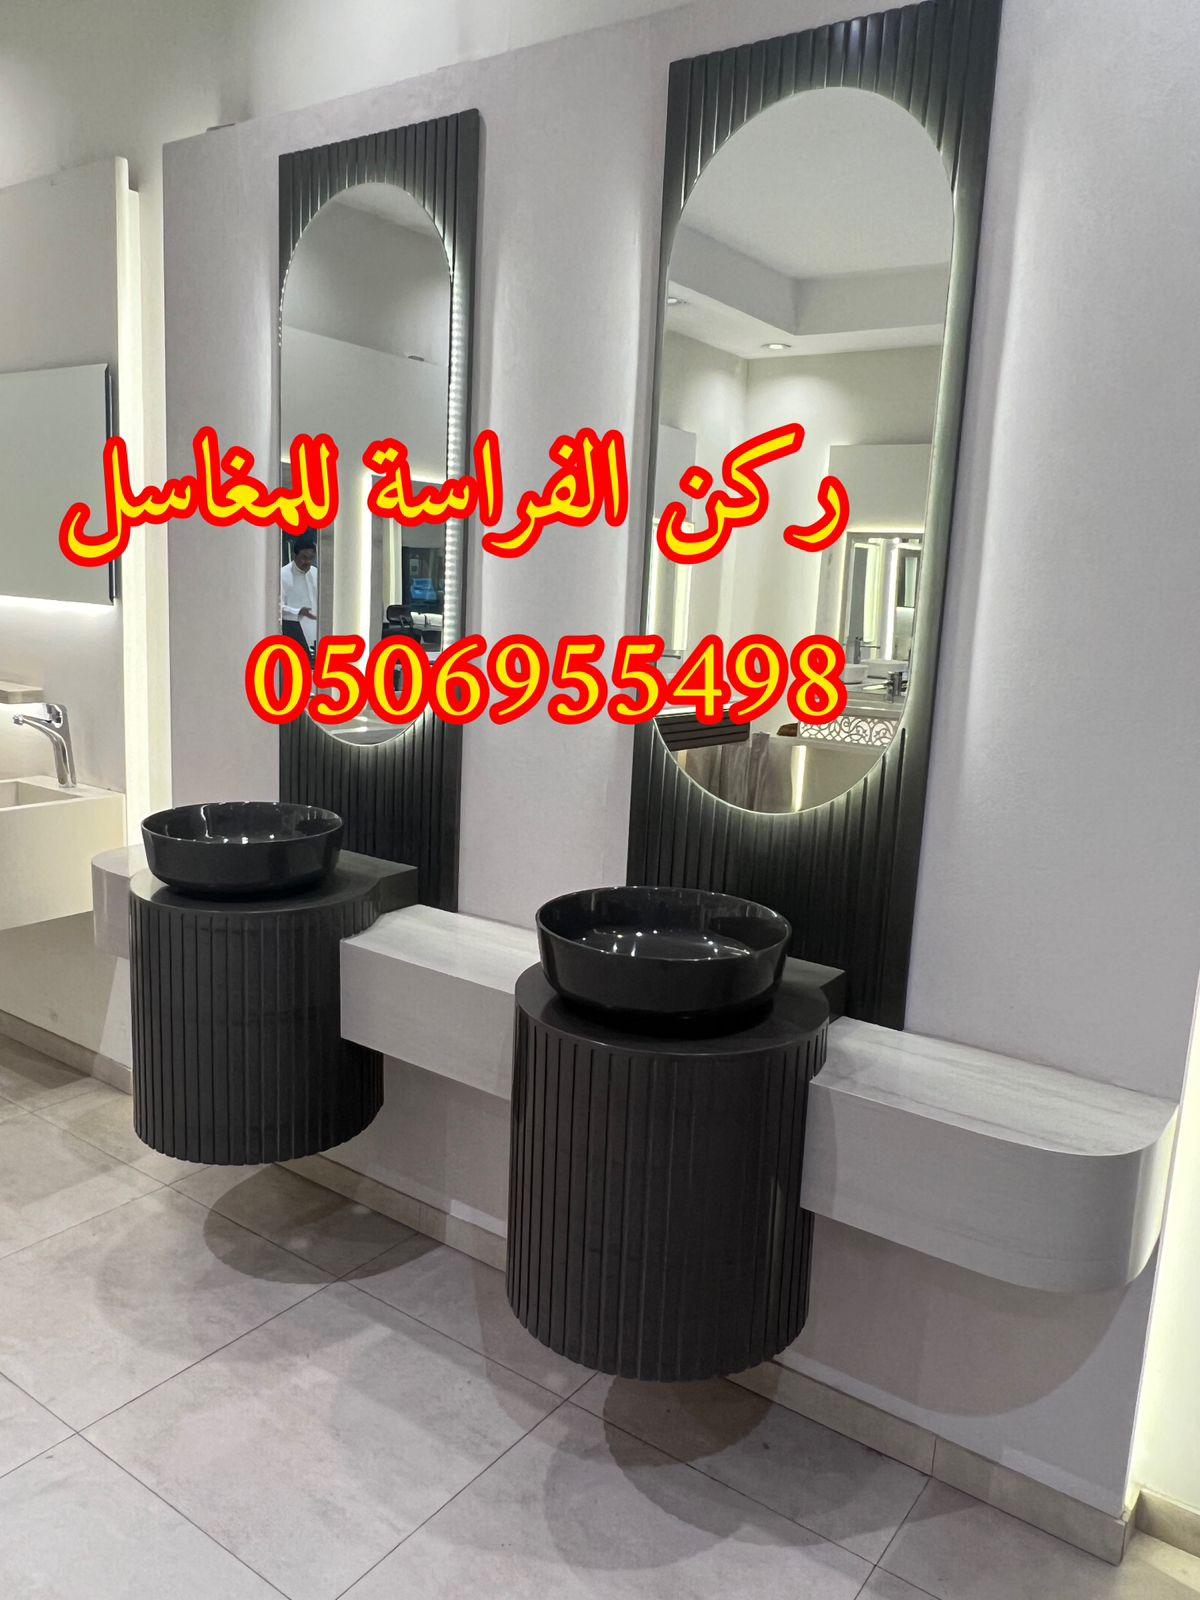 الرياض - تفصيل احواض مغاسل رخام في الرياض,0506955498 495869330